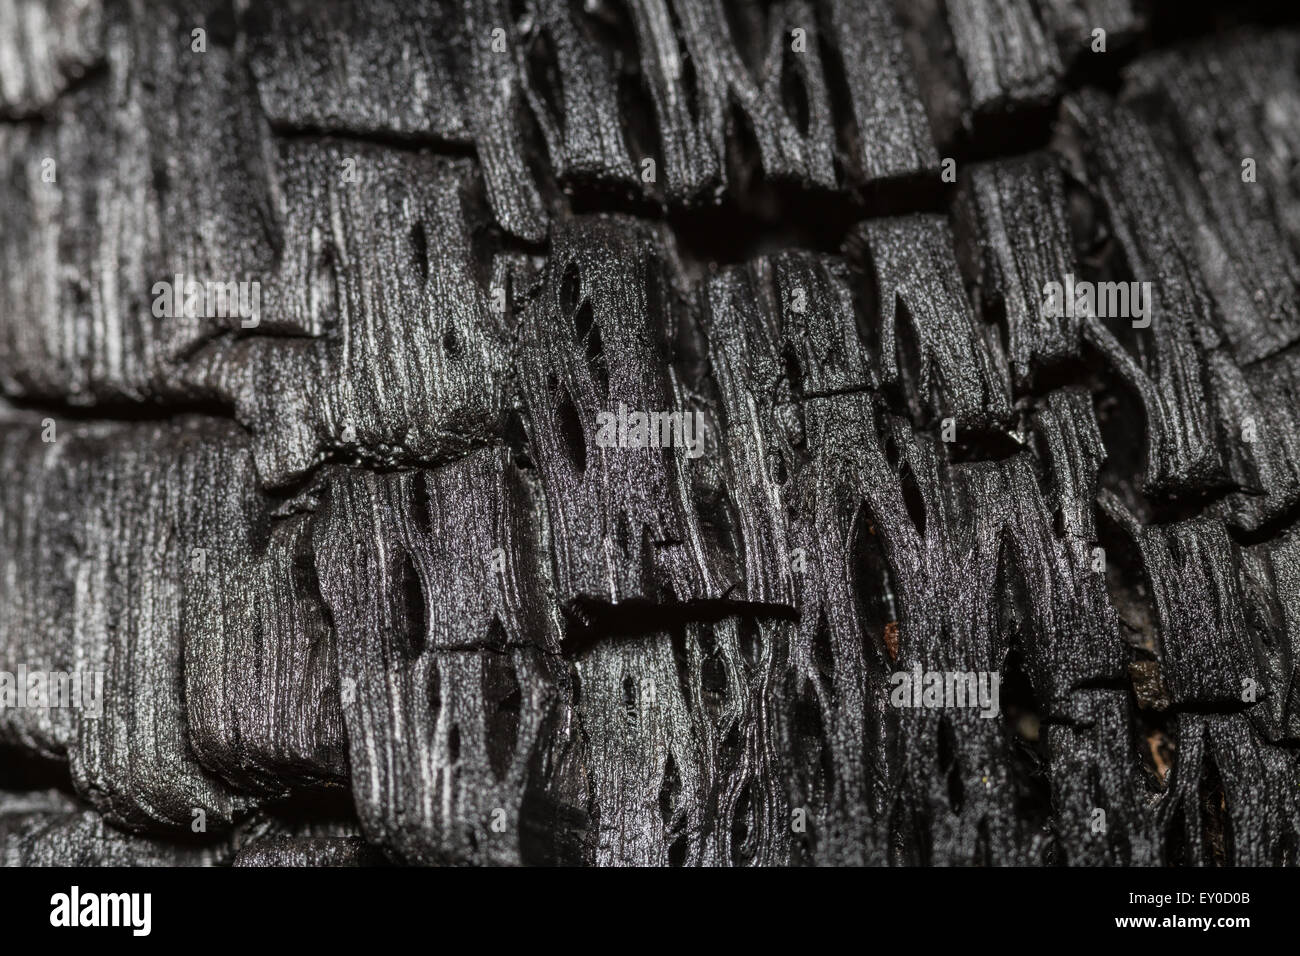 Macro photo of burnt wood Stock Photo